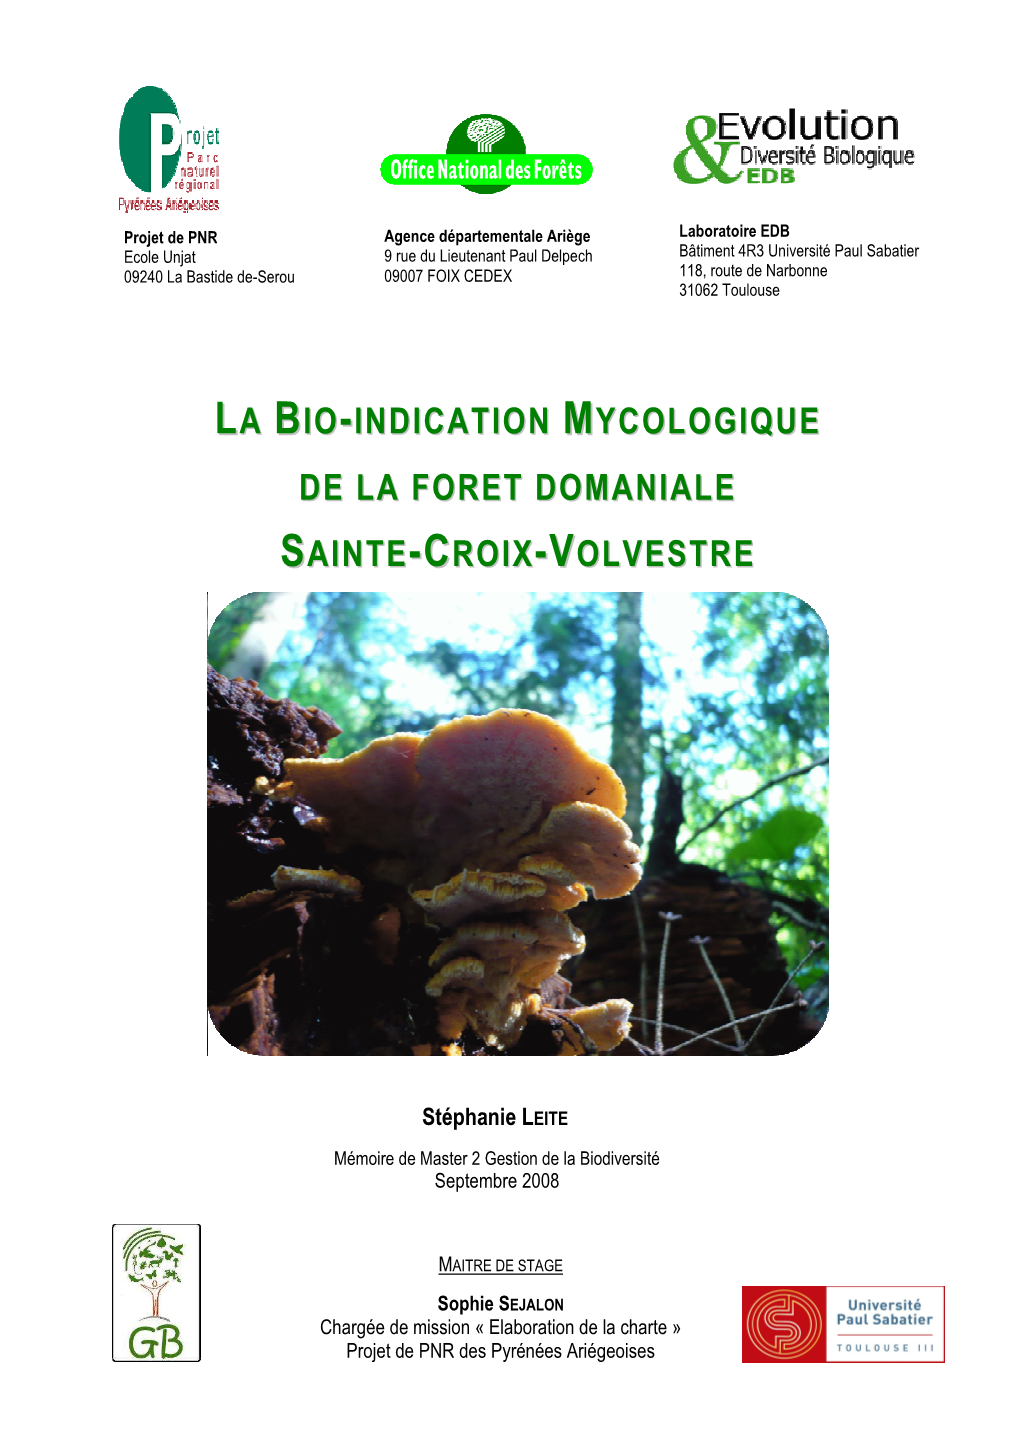 La Bio-Indication Mycologique De La Foret Domaniale Sainte-Croix-Volvestre